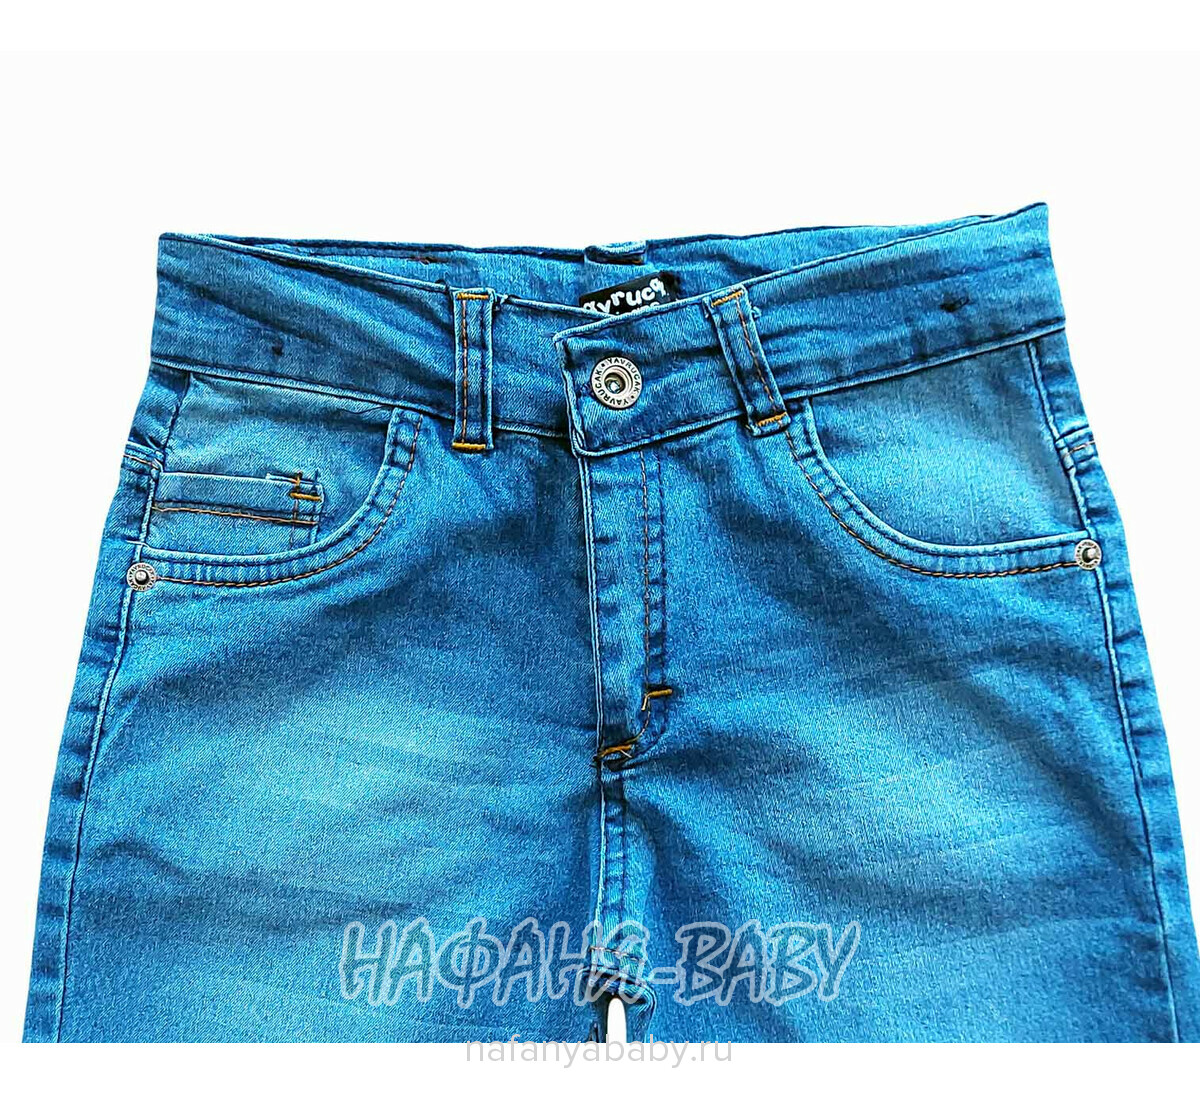 Подростковые джинсы YAVRUCAK арт: 5203 для мальчика 8-12 лет, цвет синий, оптом Турция